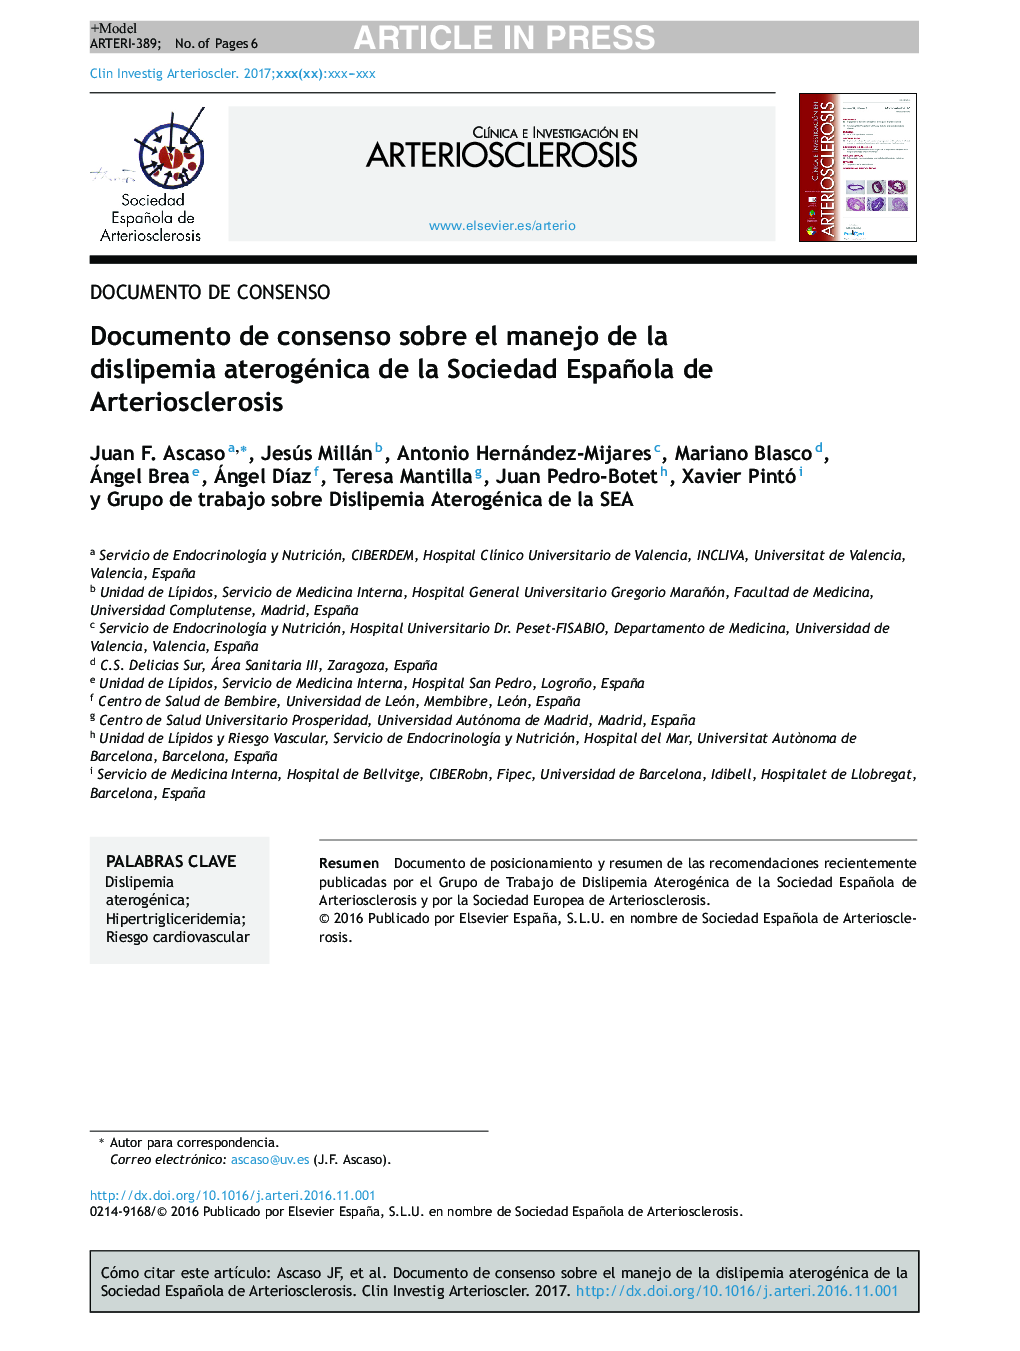 Documento de consenso sobre el manejo de la dislipemia aterogénica de la Sociedad Española de Arteriosclerosis